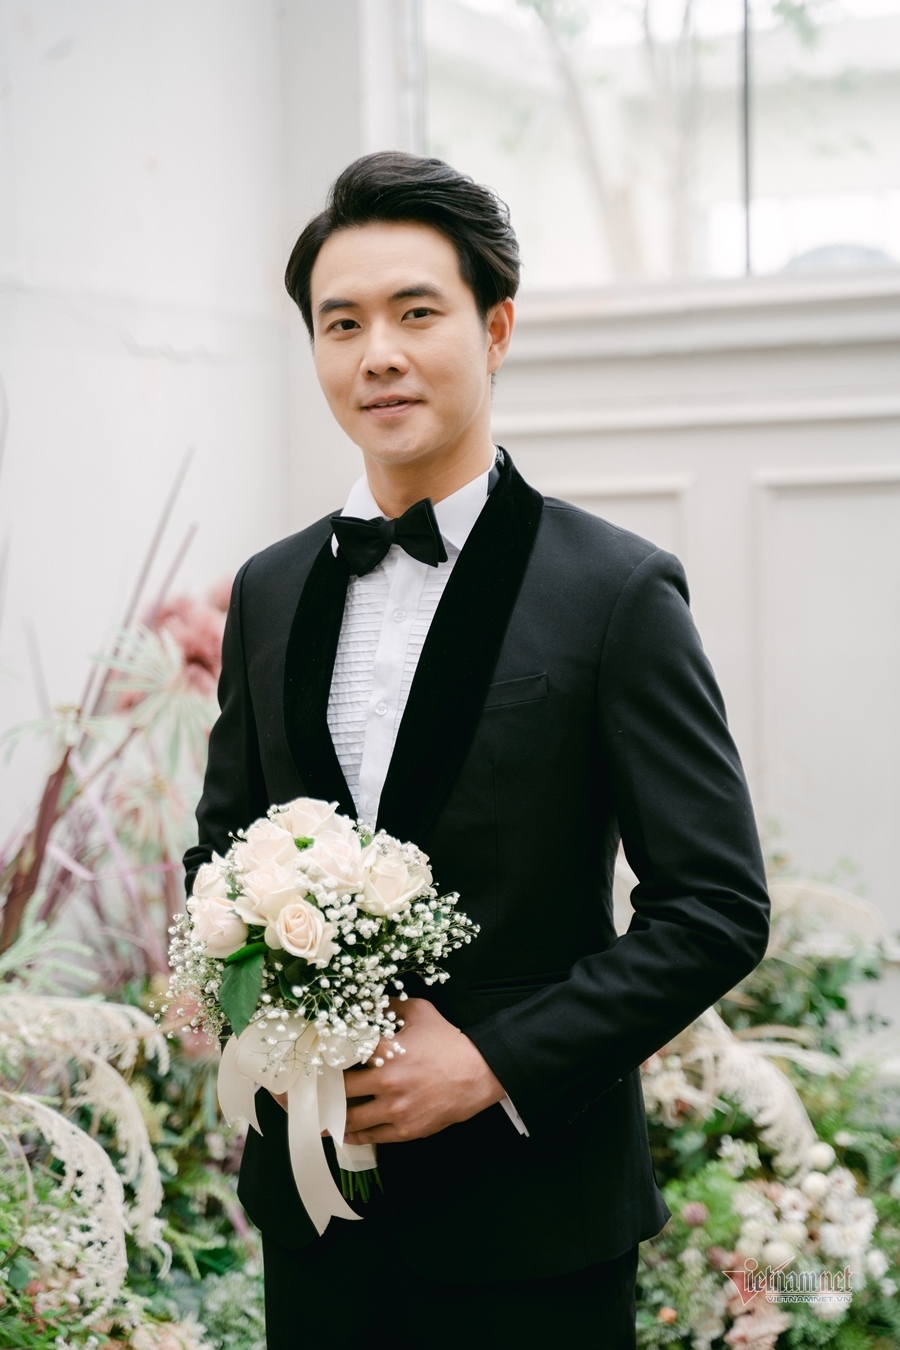 Ảnh cưới của MC Thùy Linh VTV và chồng diễn viên kém 5 tuổi